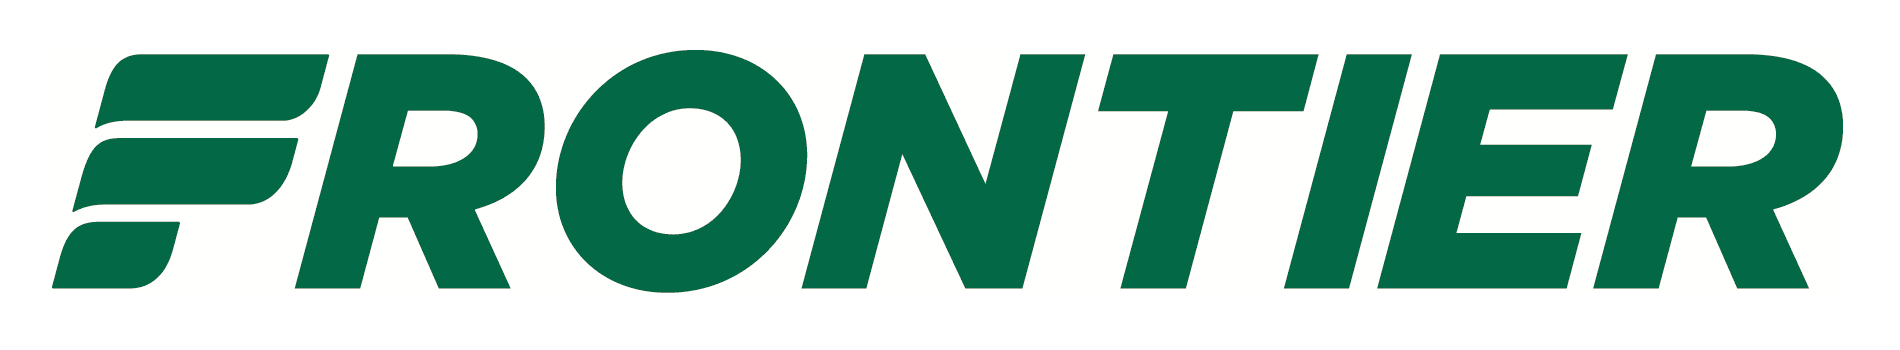 Frontier Airlines Logo - Frontier Airlines – Logos Download